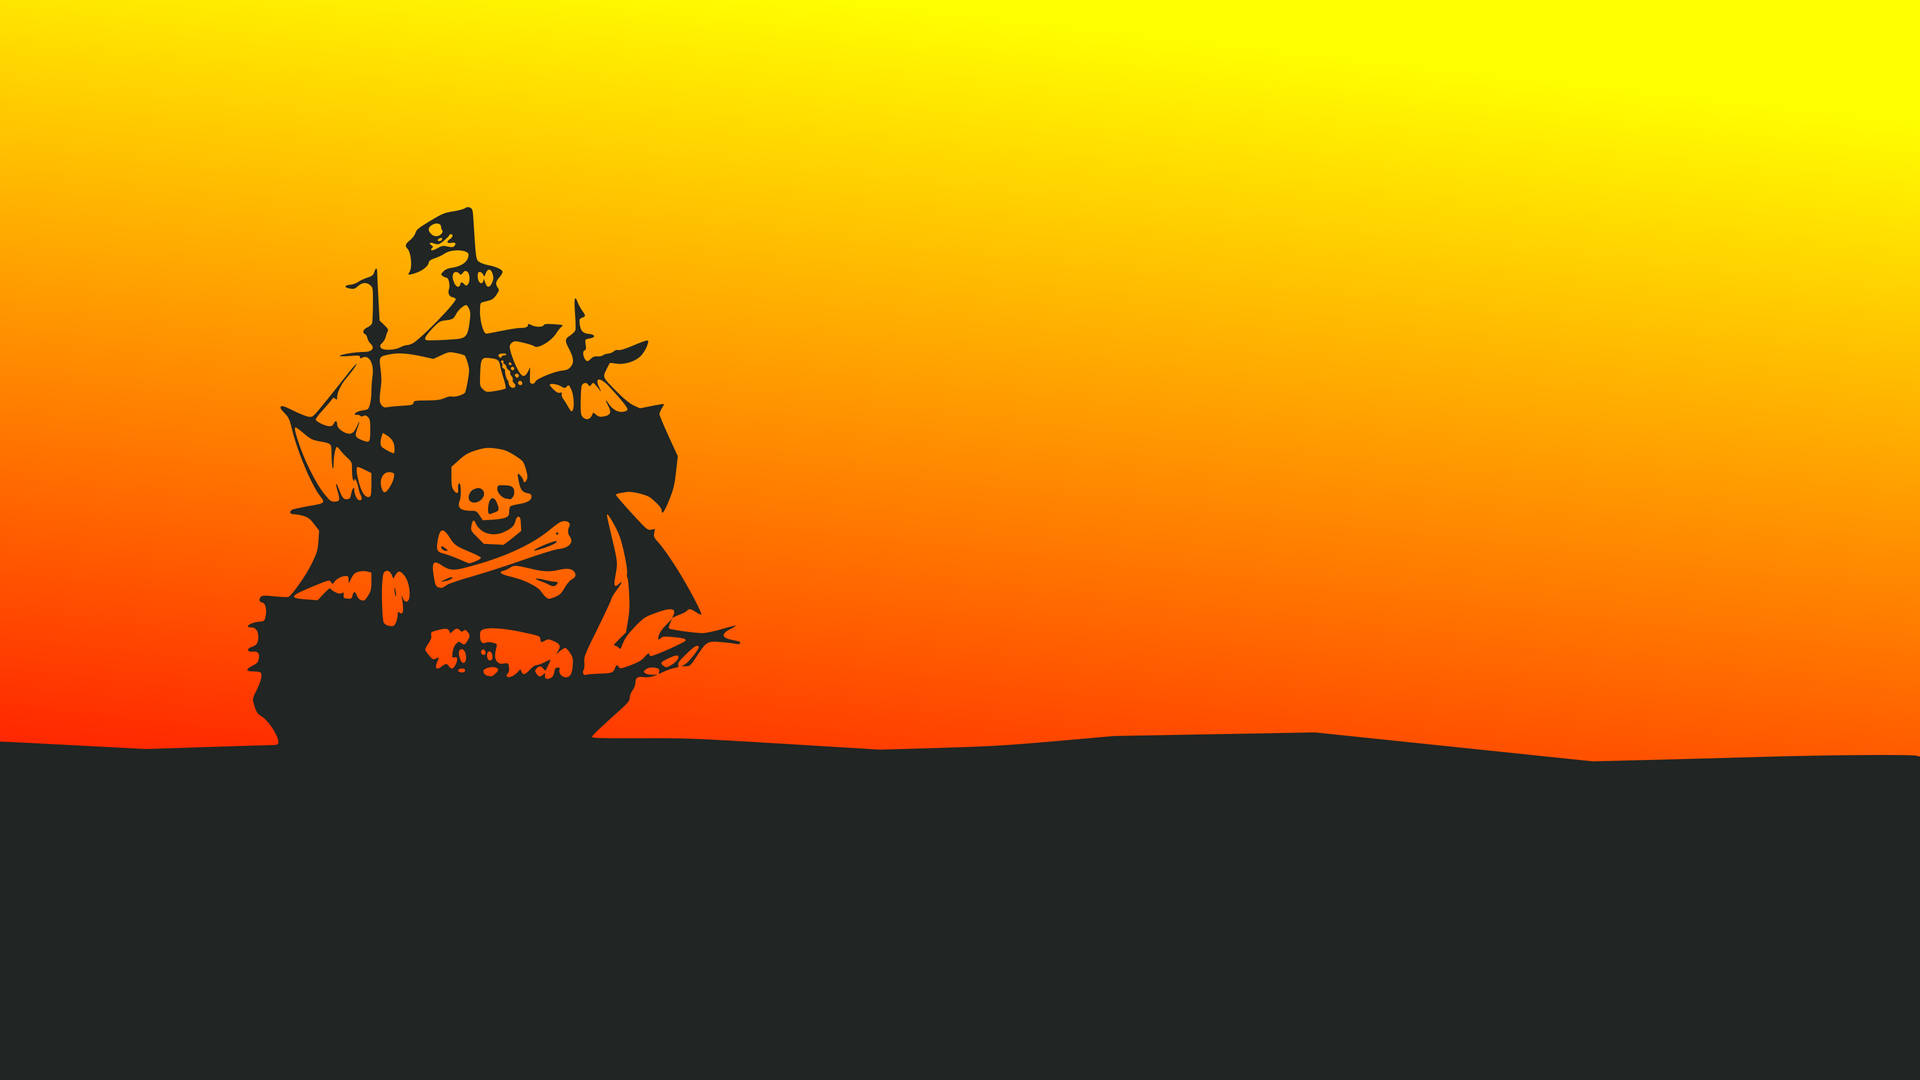 Siluetade Un Barco Pirata En Alta Definición (4k) En Color Naranja Y Negro. Fondo de pantalla